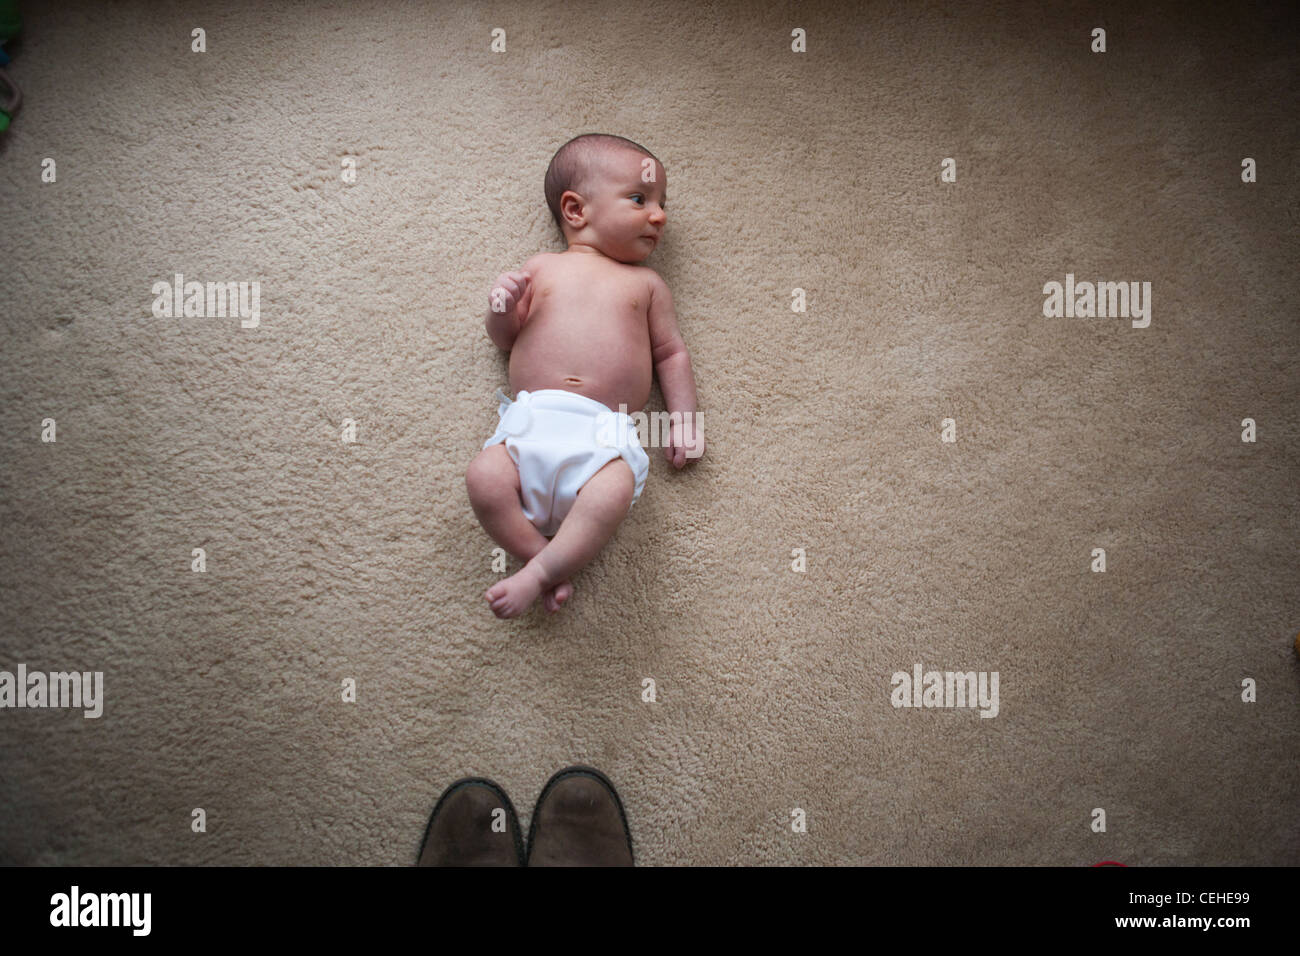 Un bébé nouveau-né fille portant sur le sol en face de la pointe des chaussures, montrant la petite taille de l'enfant. Banque D'Images